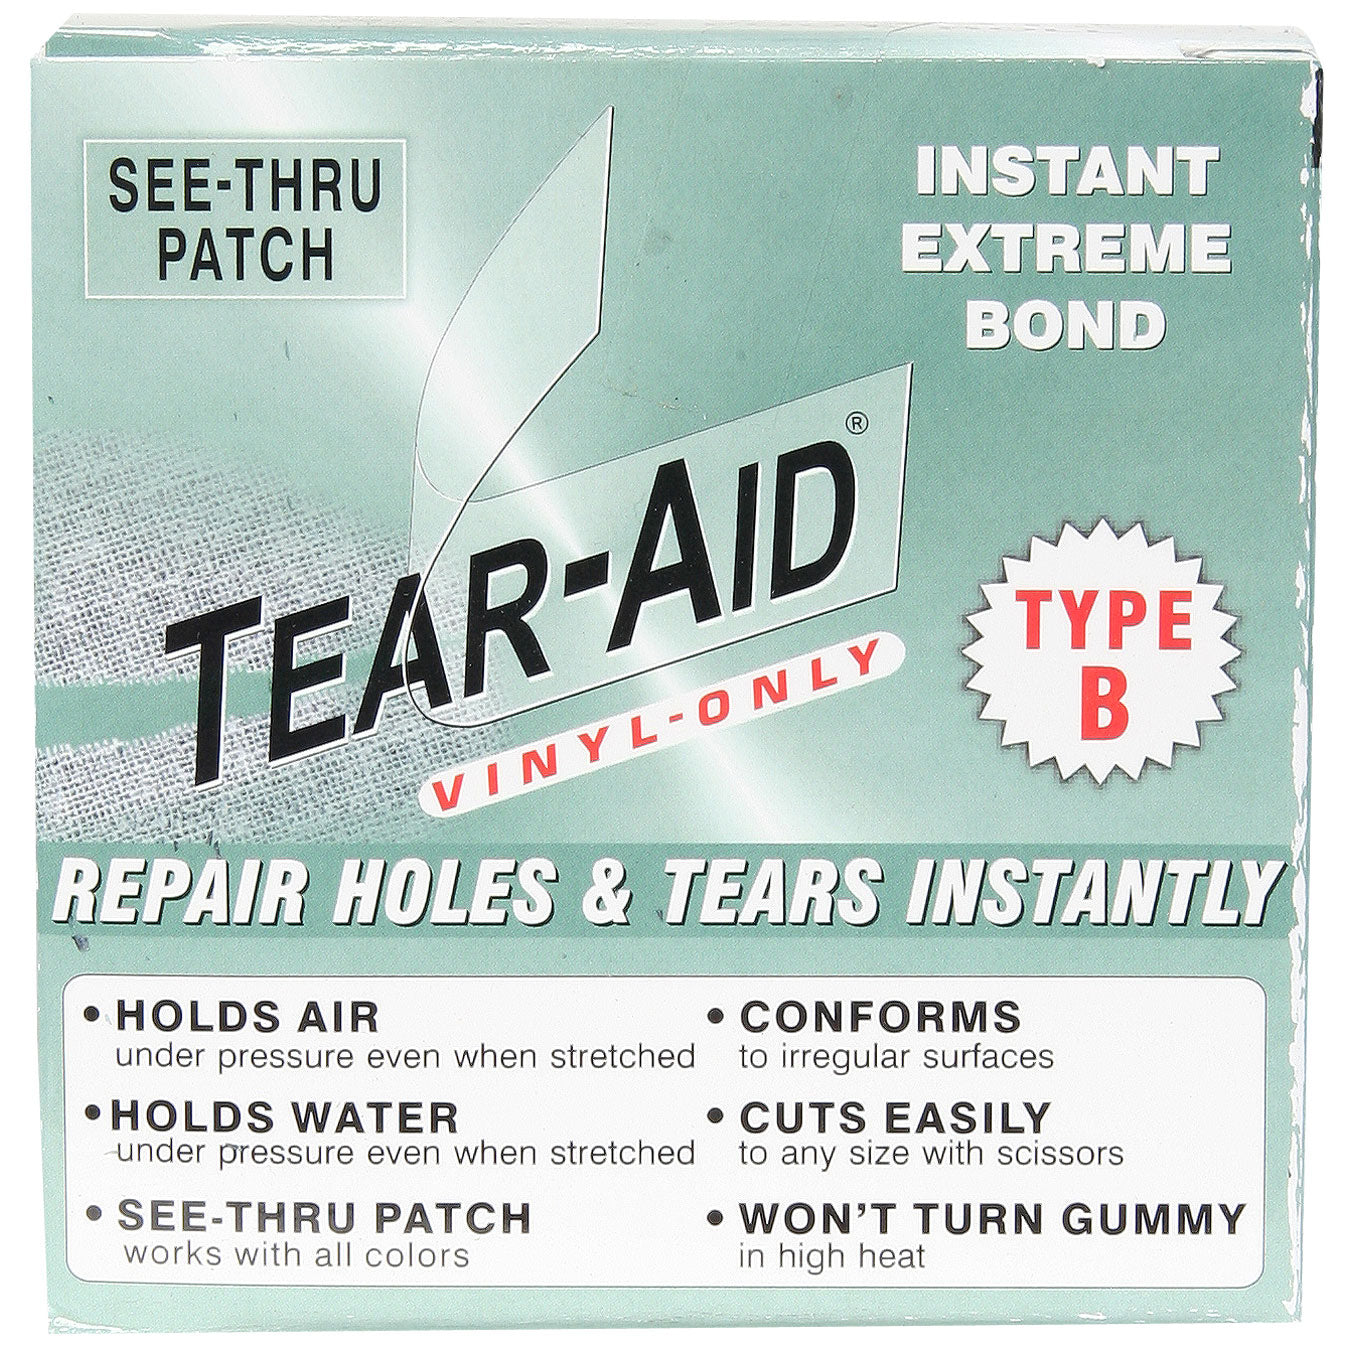 Tear-Aid Type B Vinyl Roll 5